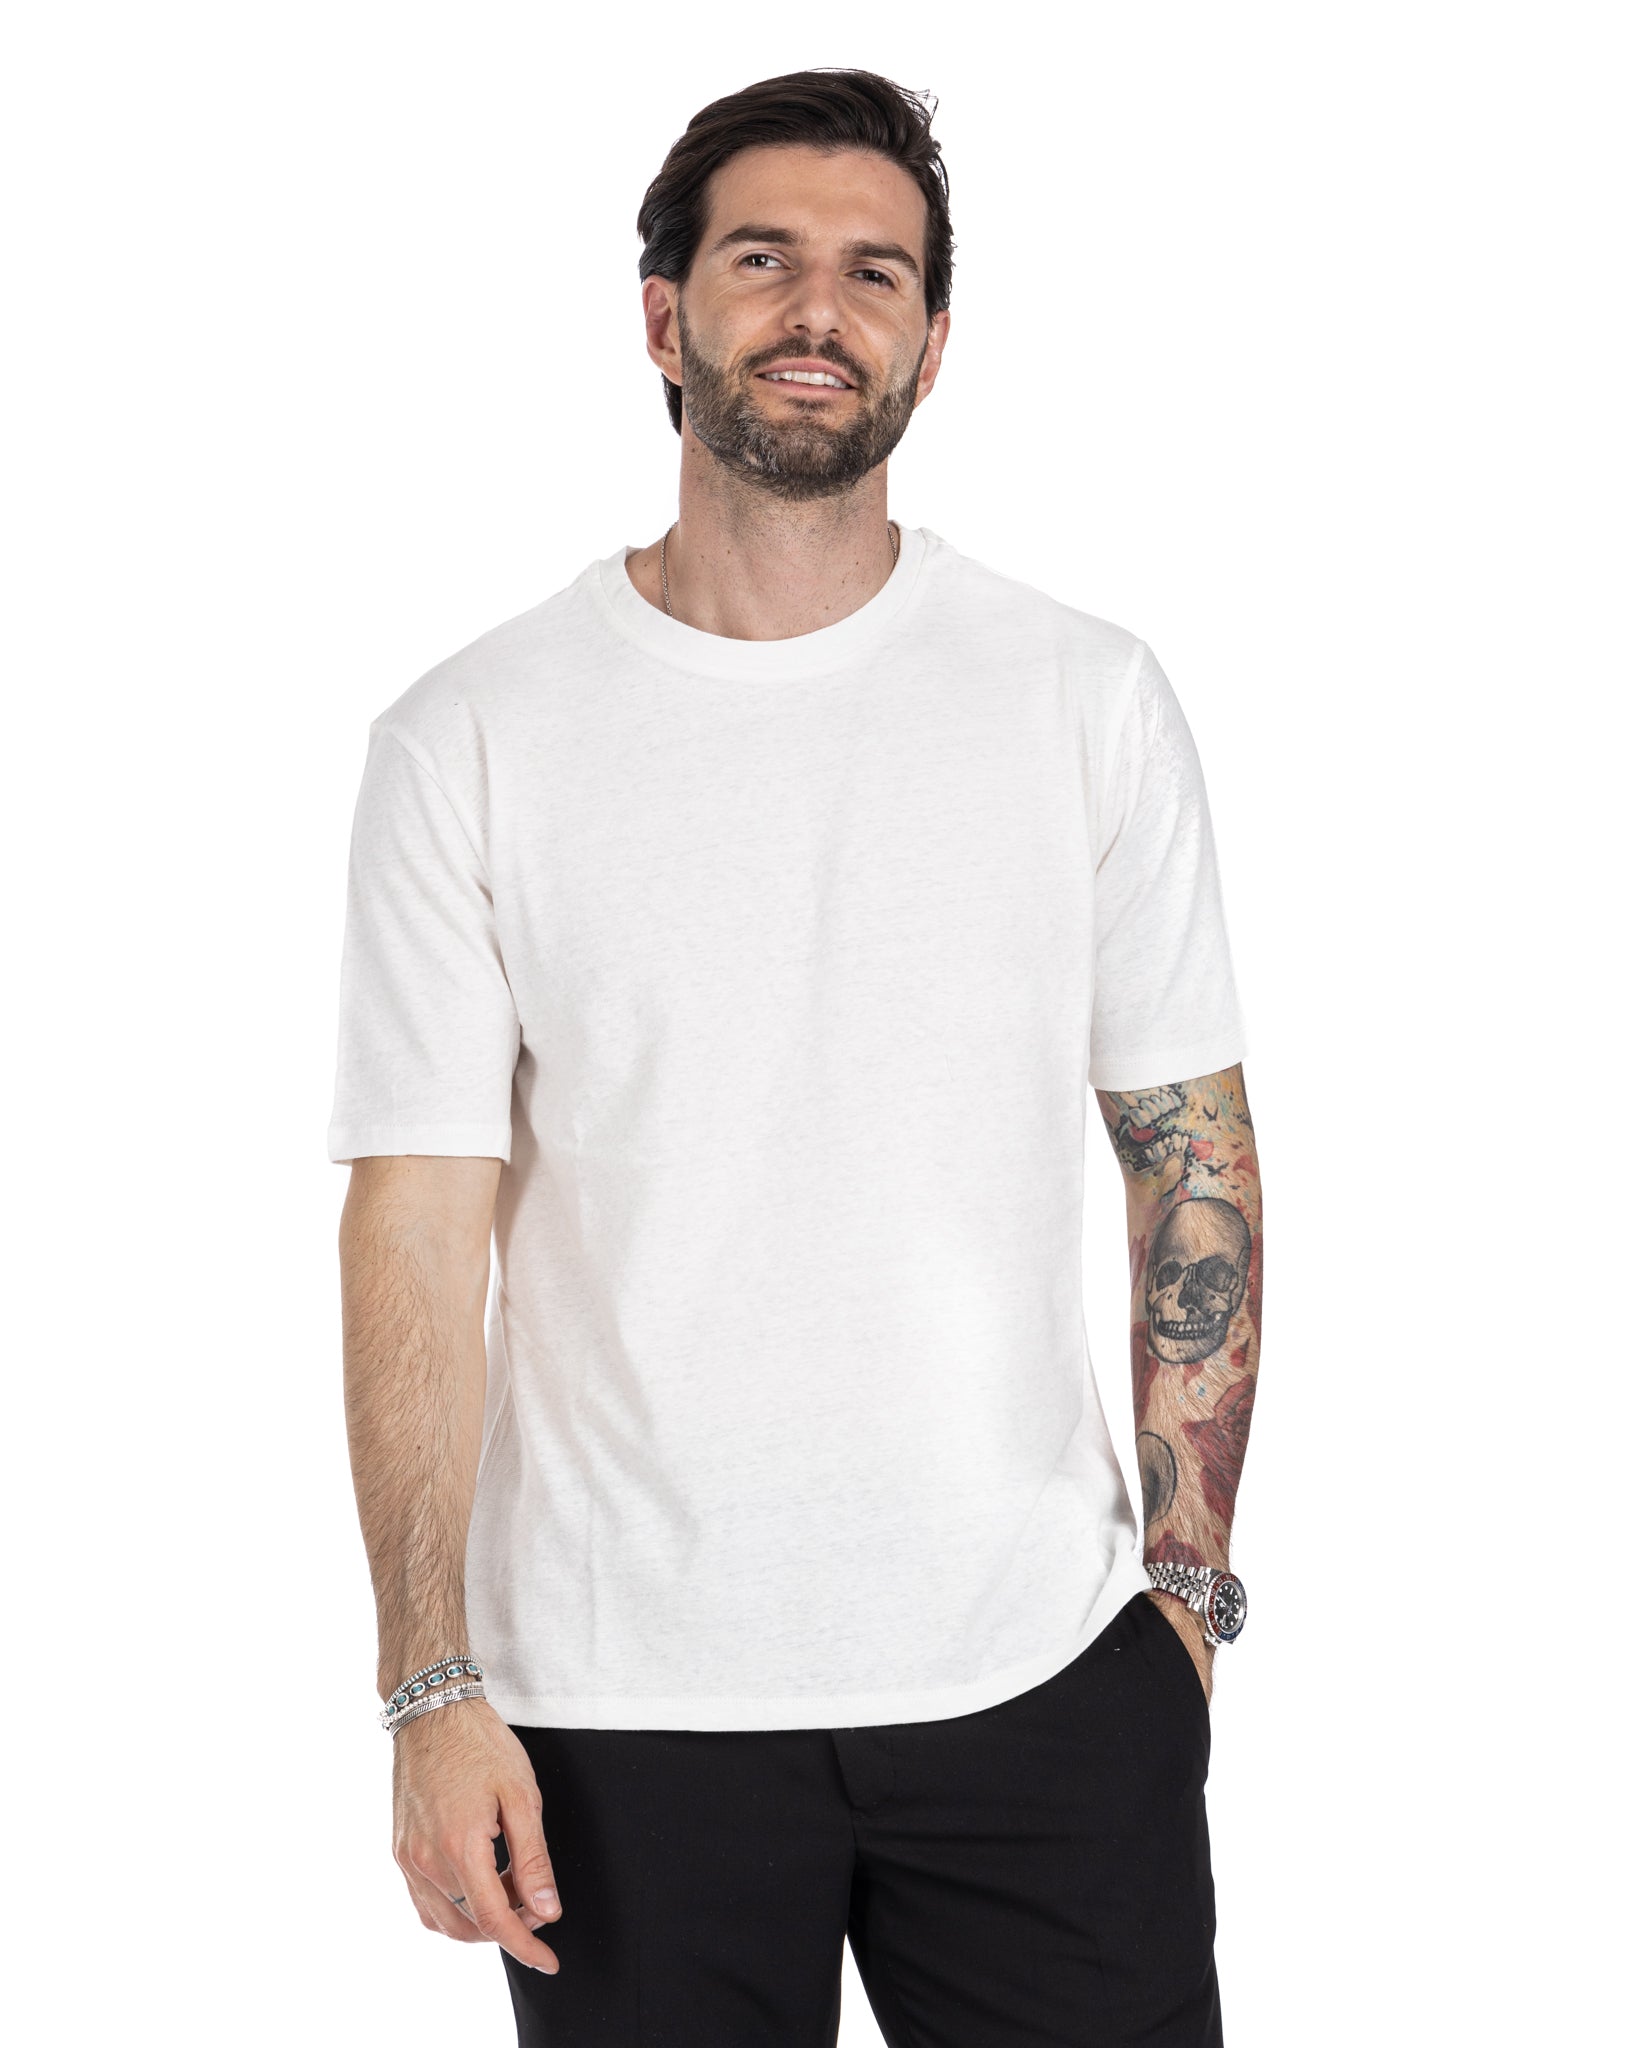 Favignana - white linen t-shirt